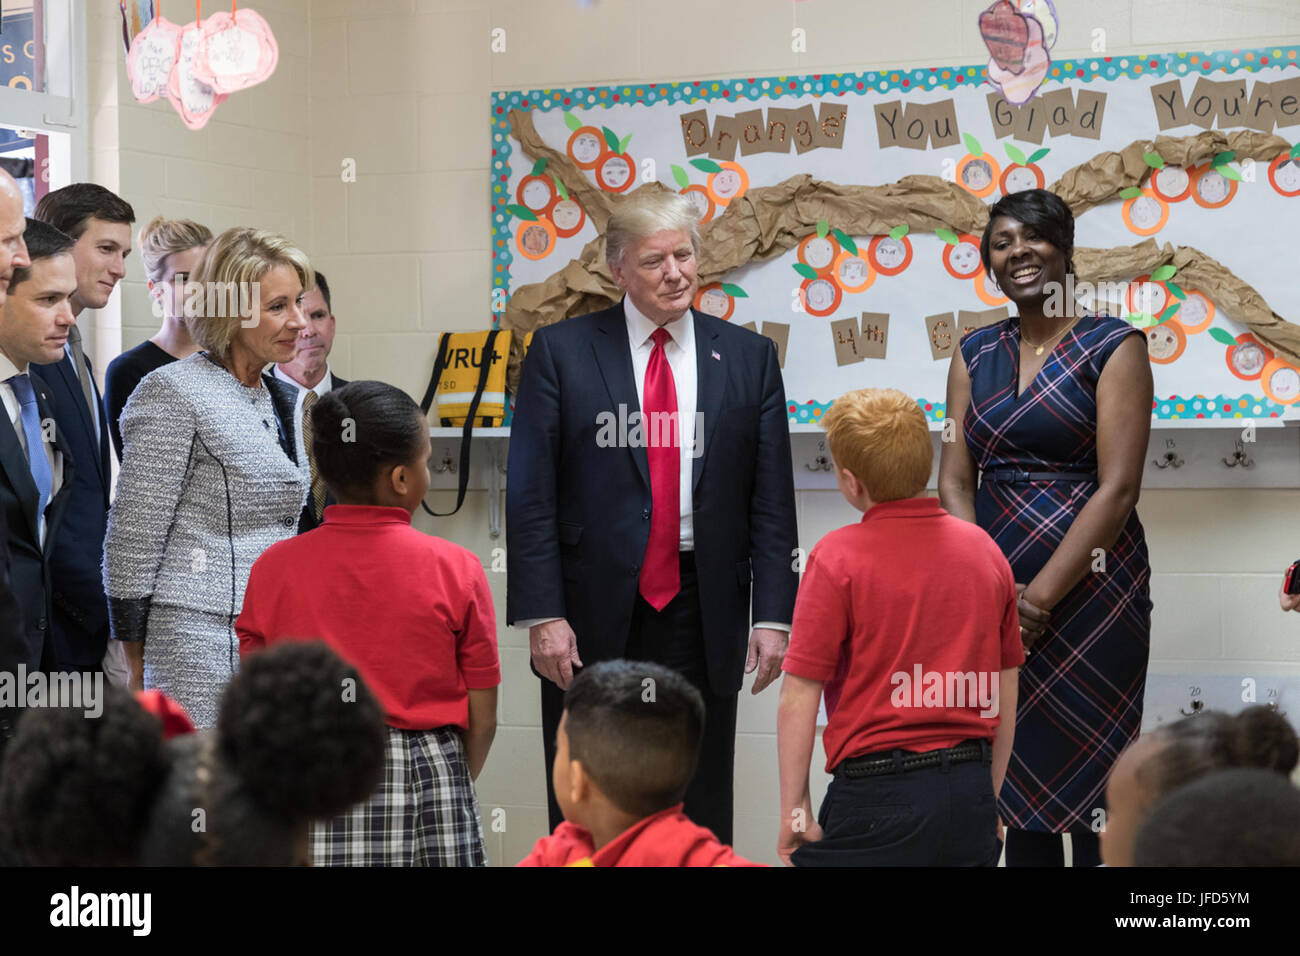 Le président Donald Trump et le secrétaire américain de l'éducation Betsy DeVos participer à une visite guidée de Saint Andrew's Catholic School le Vendredi, Mars 3, 2017, Orlando, Floride. Officiel de la Maison Blanche (photo par Shealah Craighead) Banque D'Images